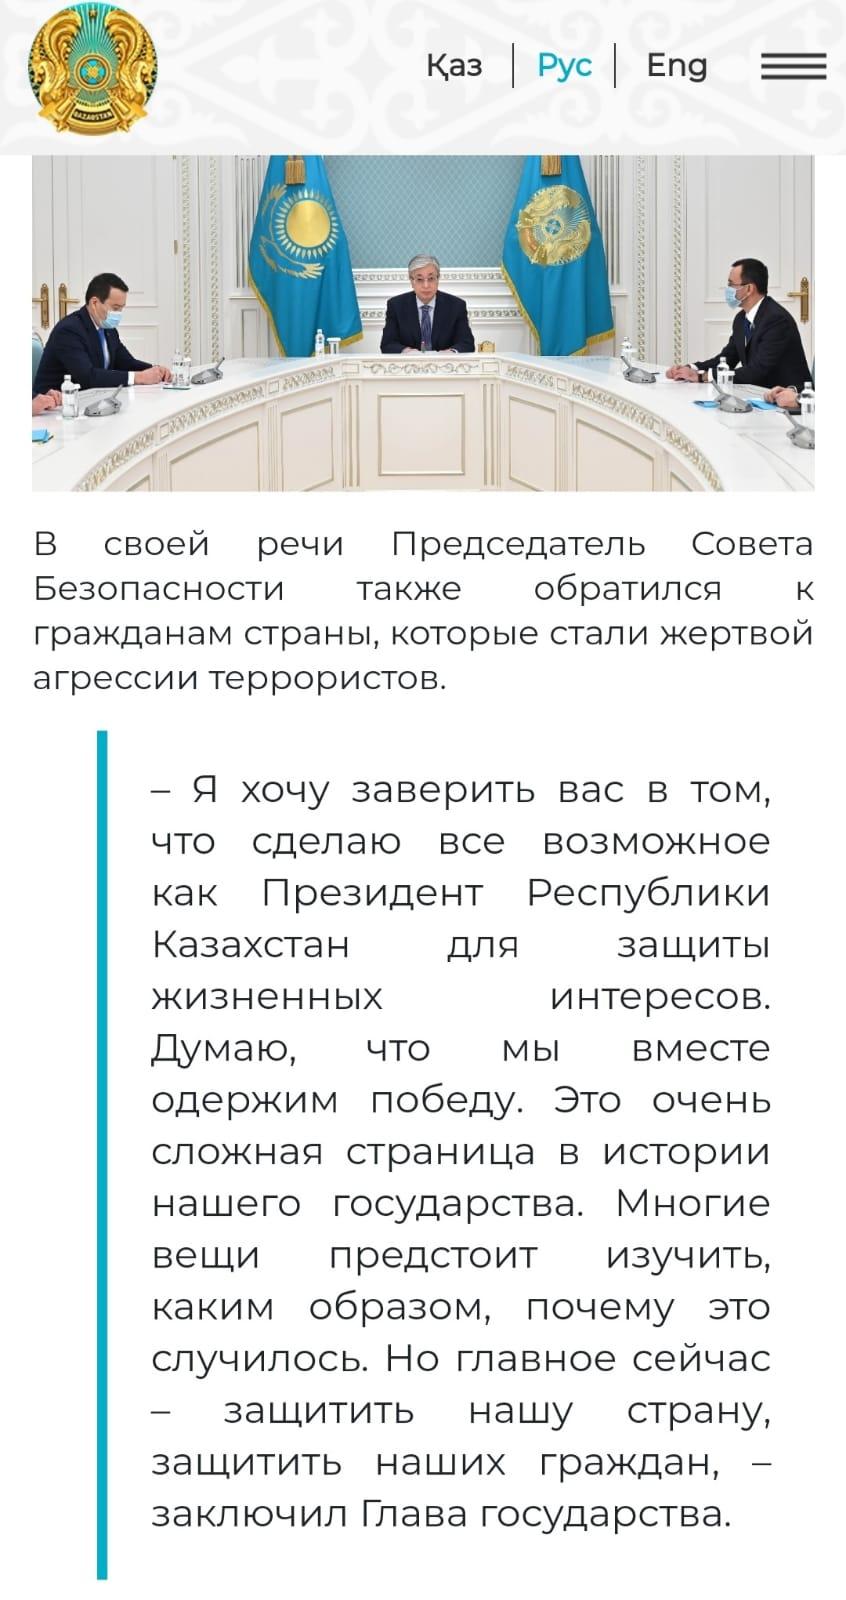 Касым-Жомарт Токаев провел заседание Совета Безопасности